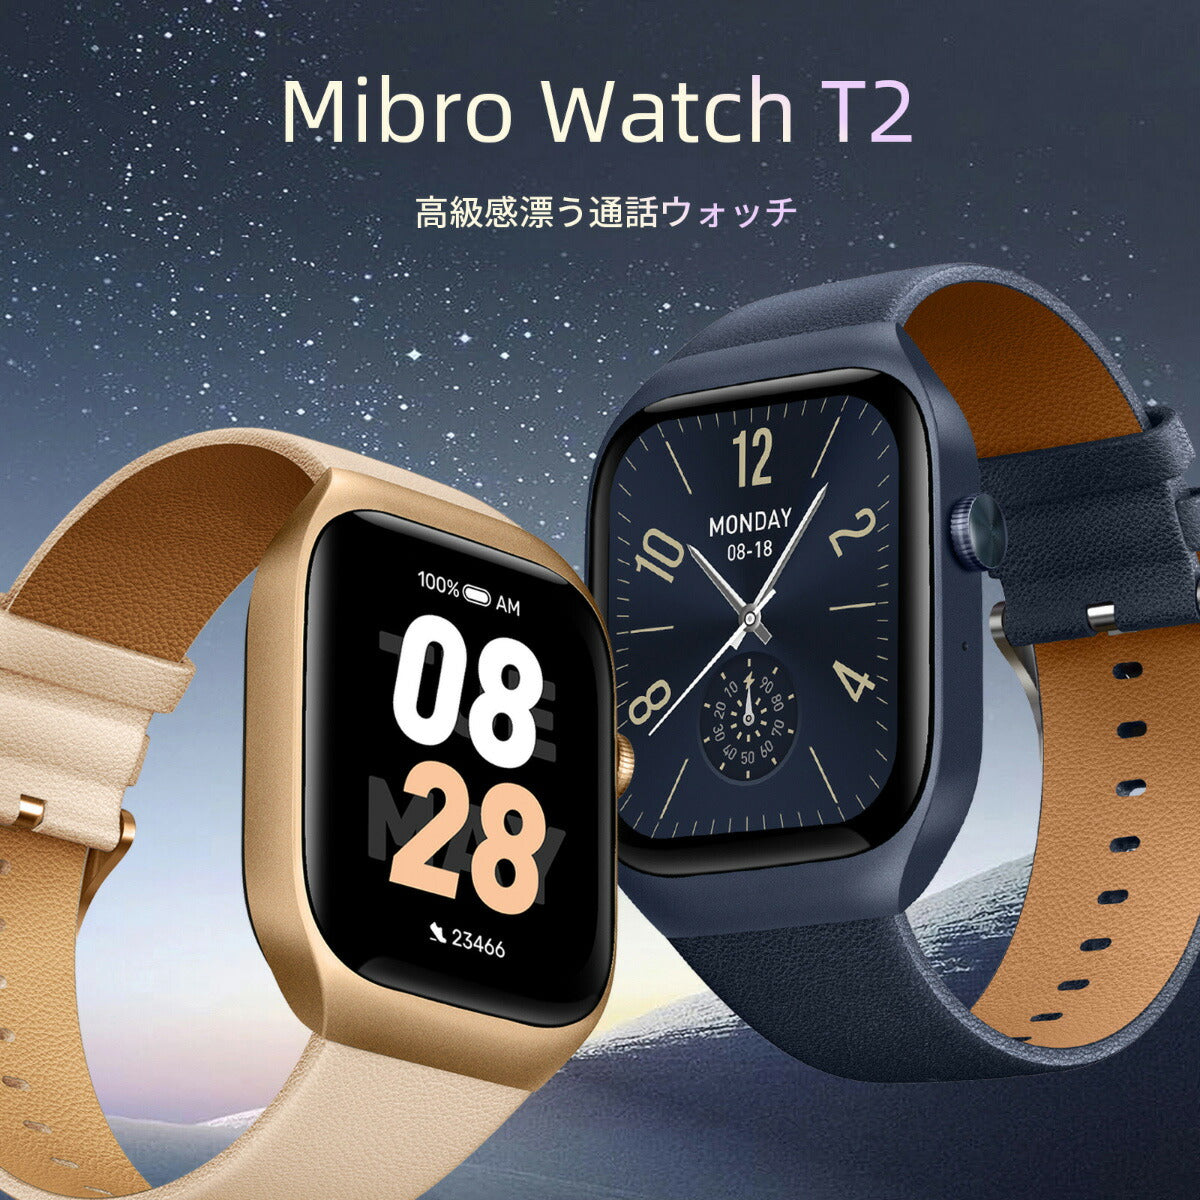 ミブロ Mibro スマートウォッチ Mibro Watch T2 BL SP380008-C60 ディープブルー 腕時計 メンズ レディース